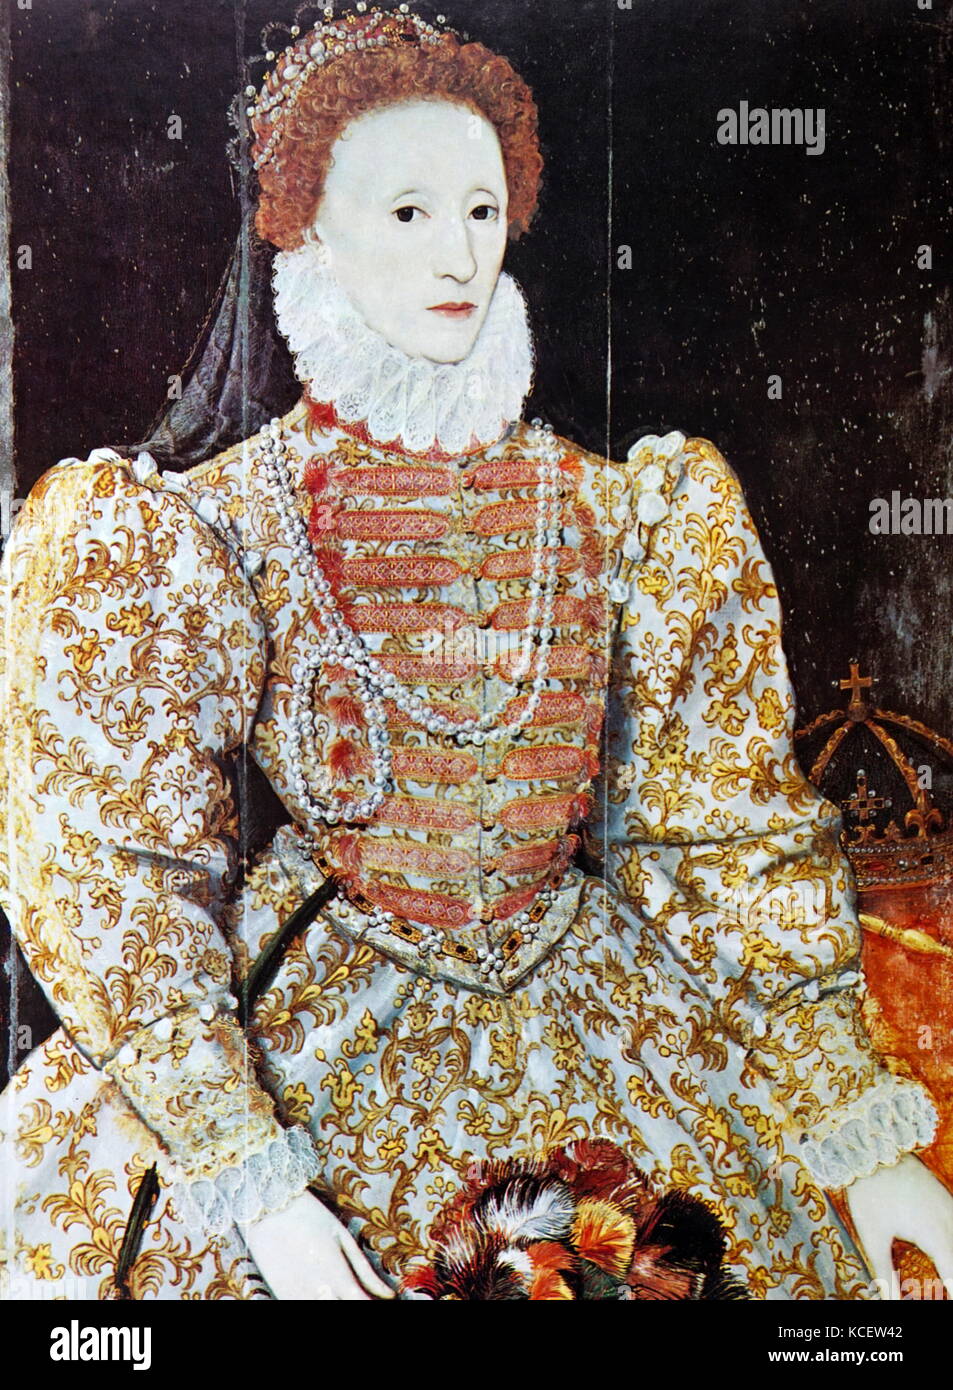 La reine Elizabeth Ier d'Angleterre, Maalouf (). Reine 1558-1603. Huile sur panneau, c2666, par un artiste inconnu. Banque D'Images